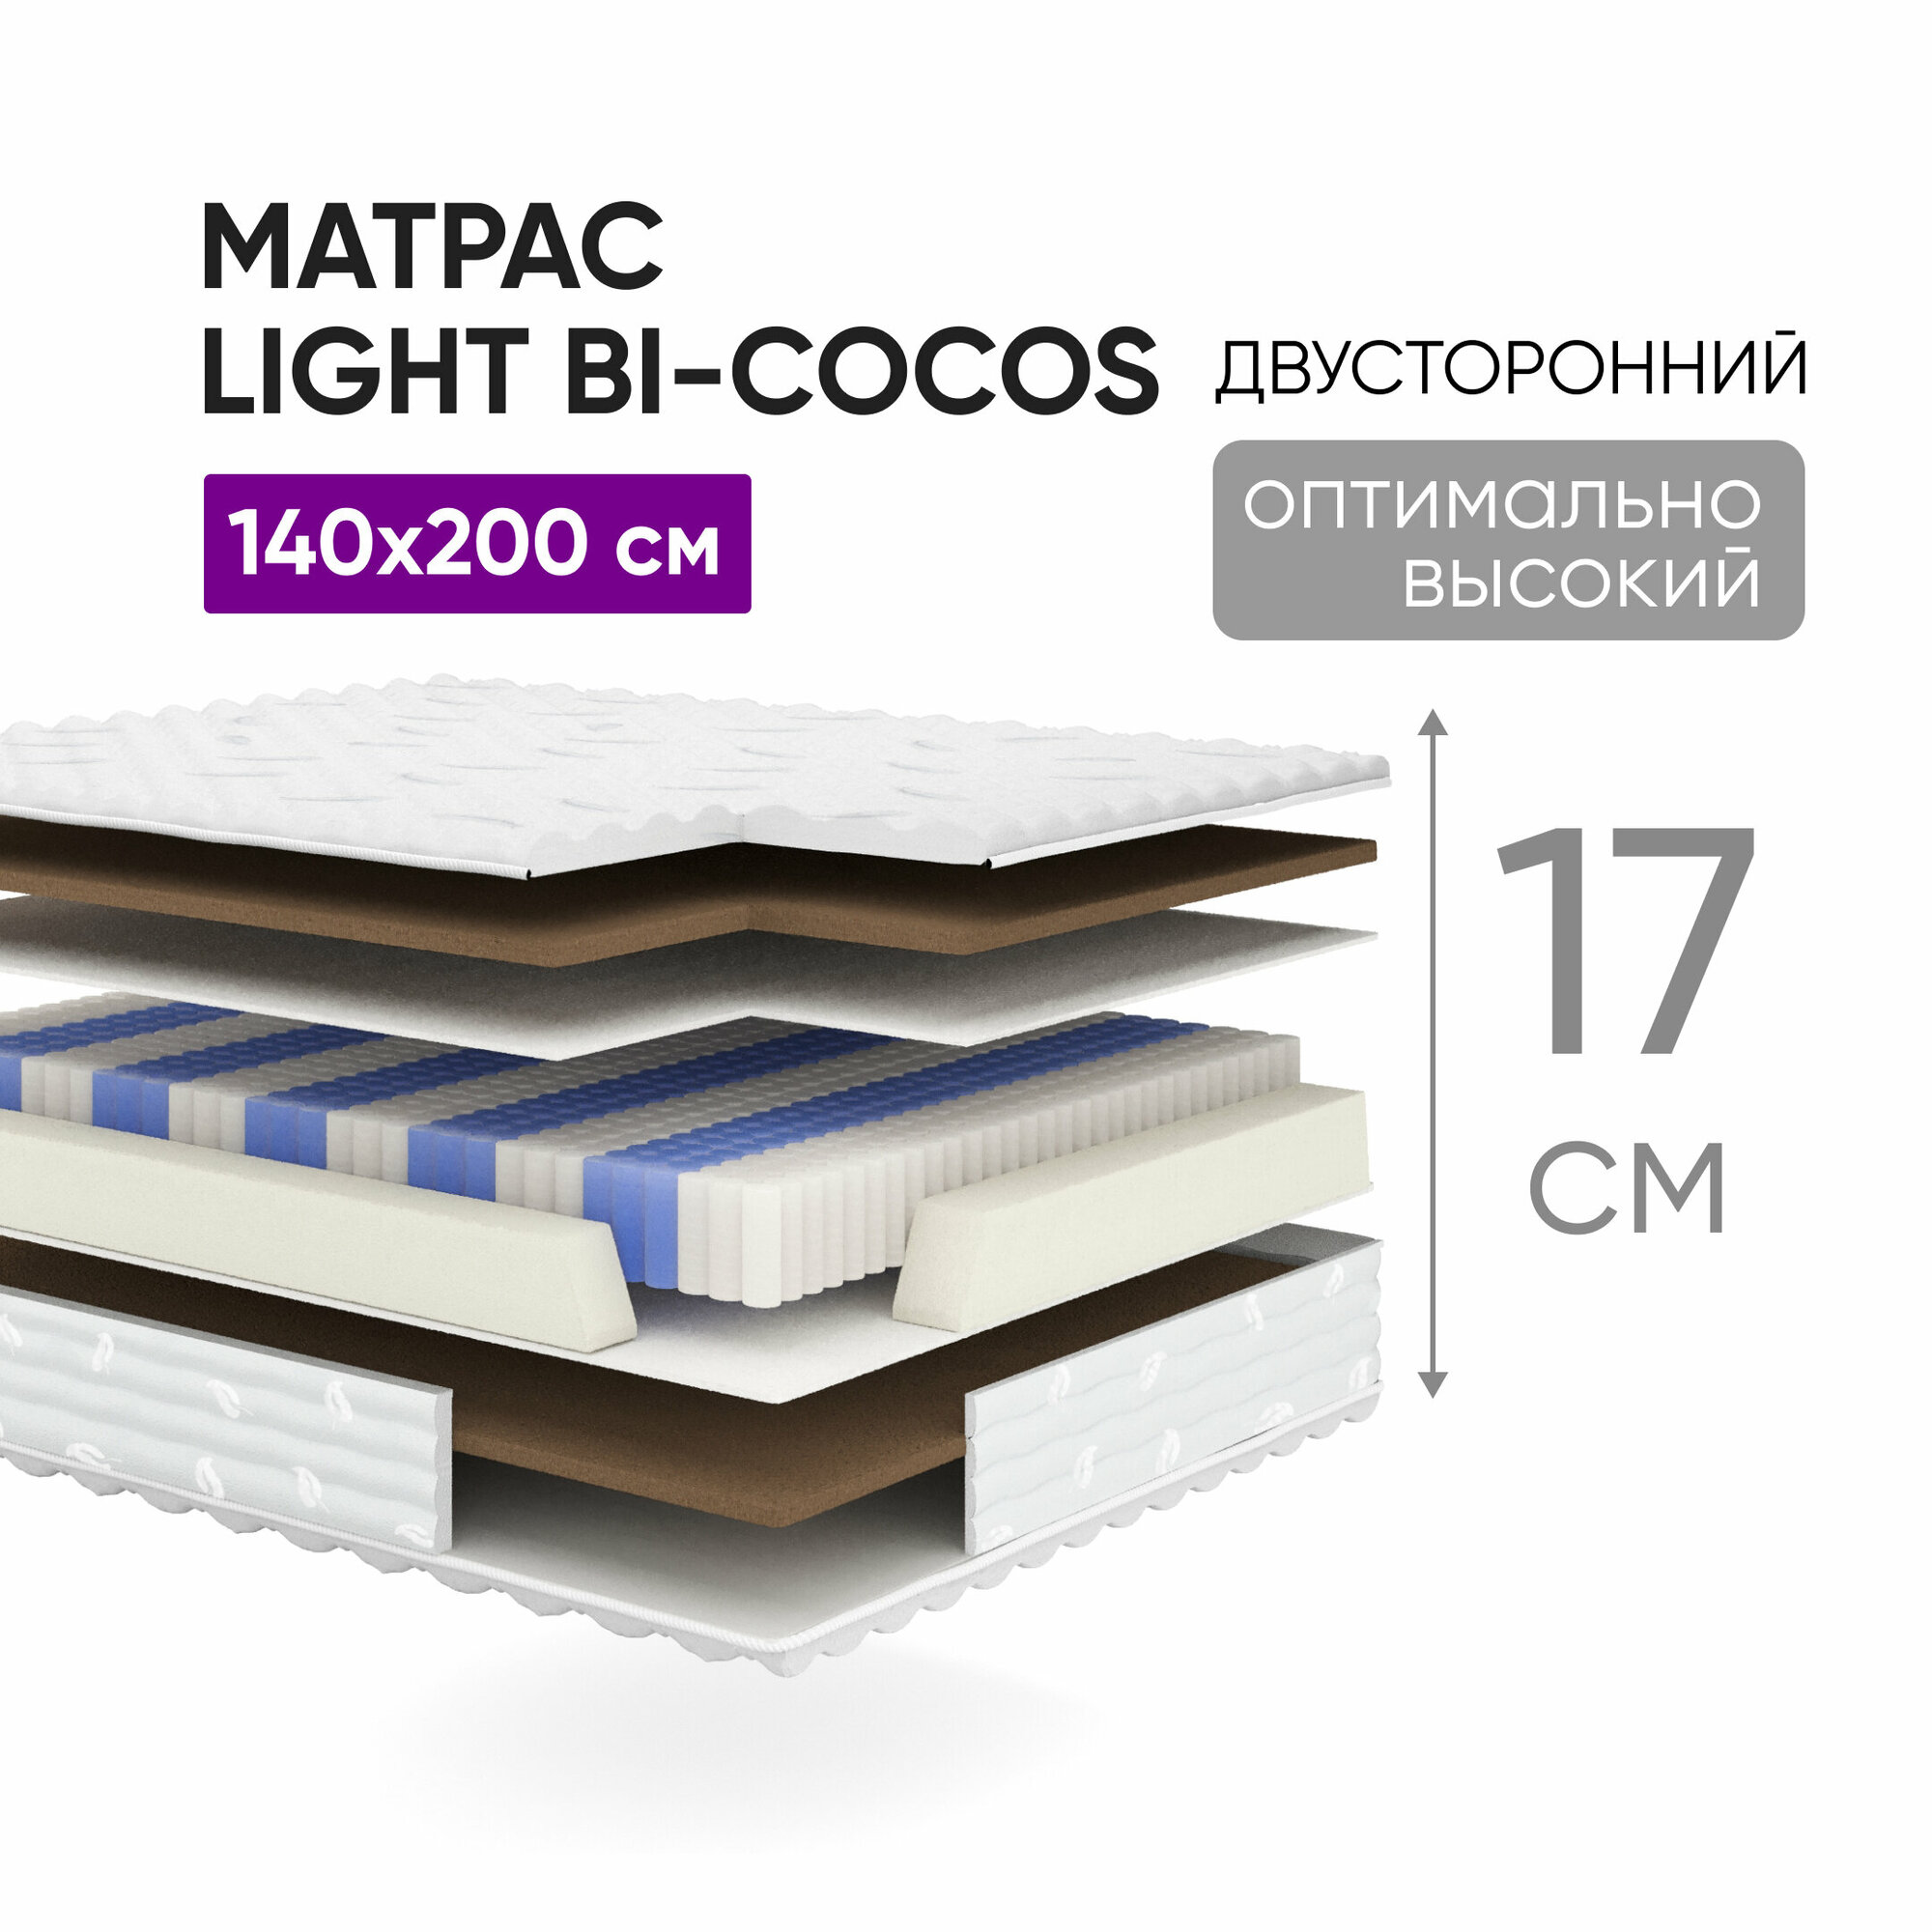 Матрас Light Bi-cocos 140х200